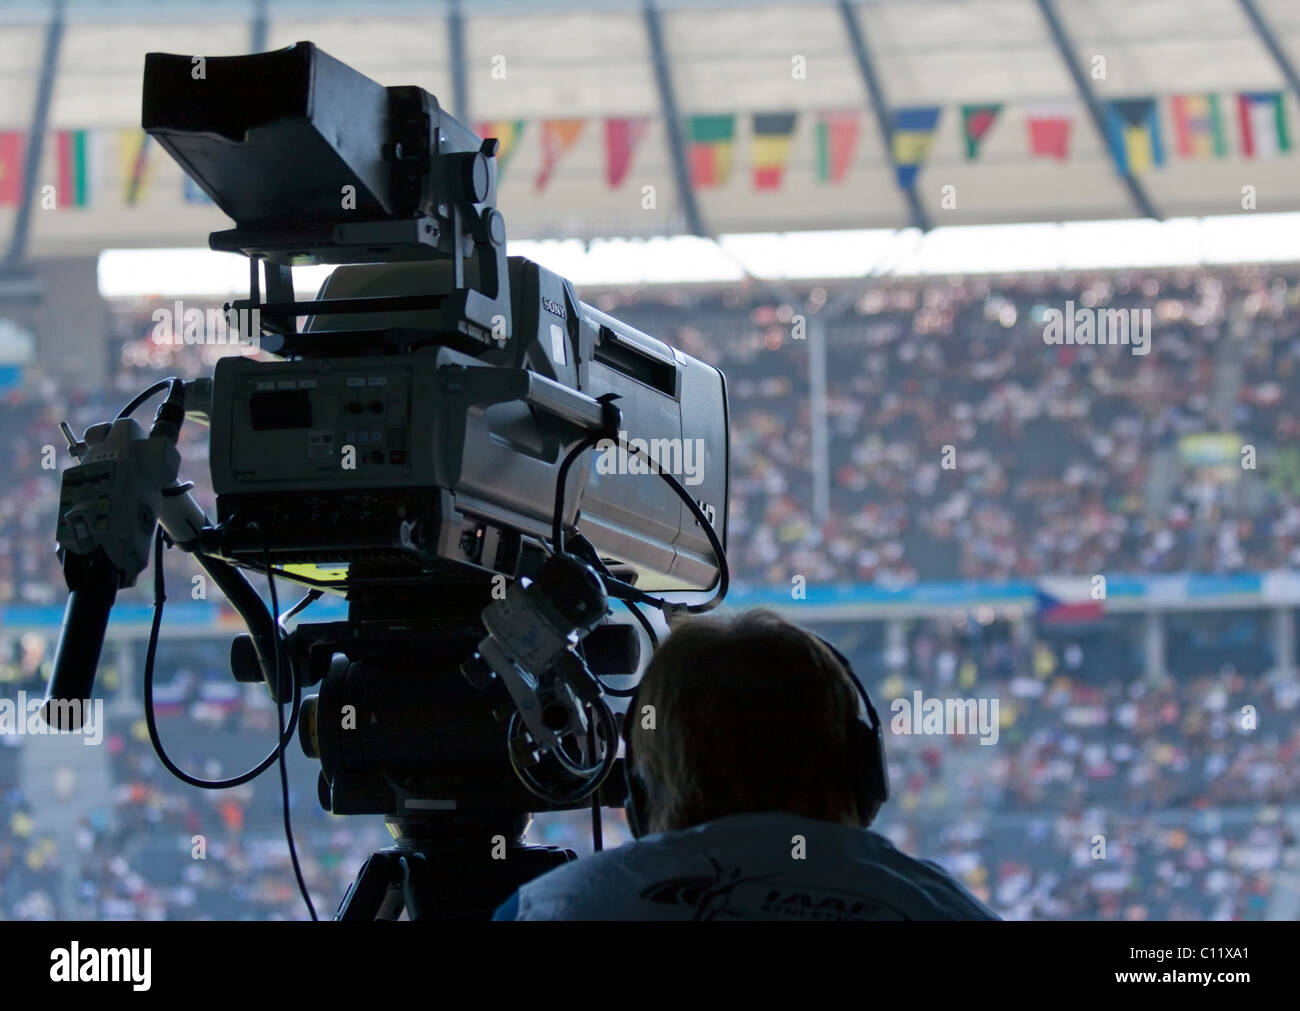 Cámara graba en un evento deportivo en el Estadio Olímpico de Berlín, Alemania, Europa Foto de stock